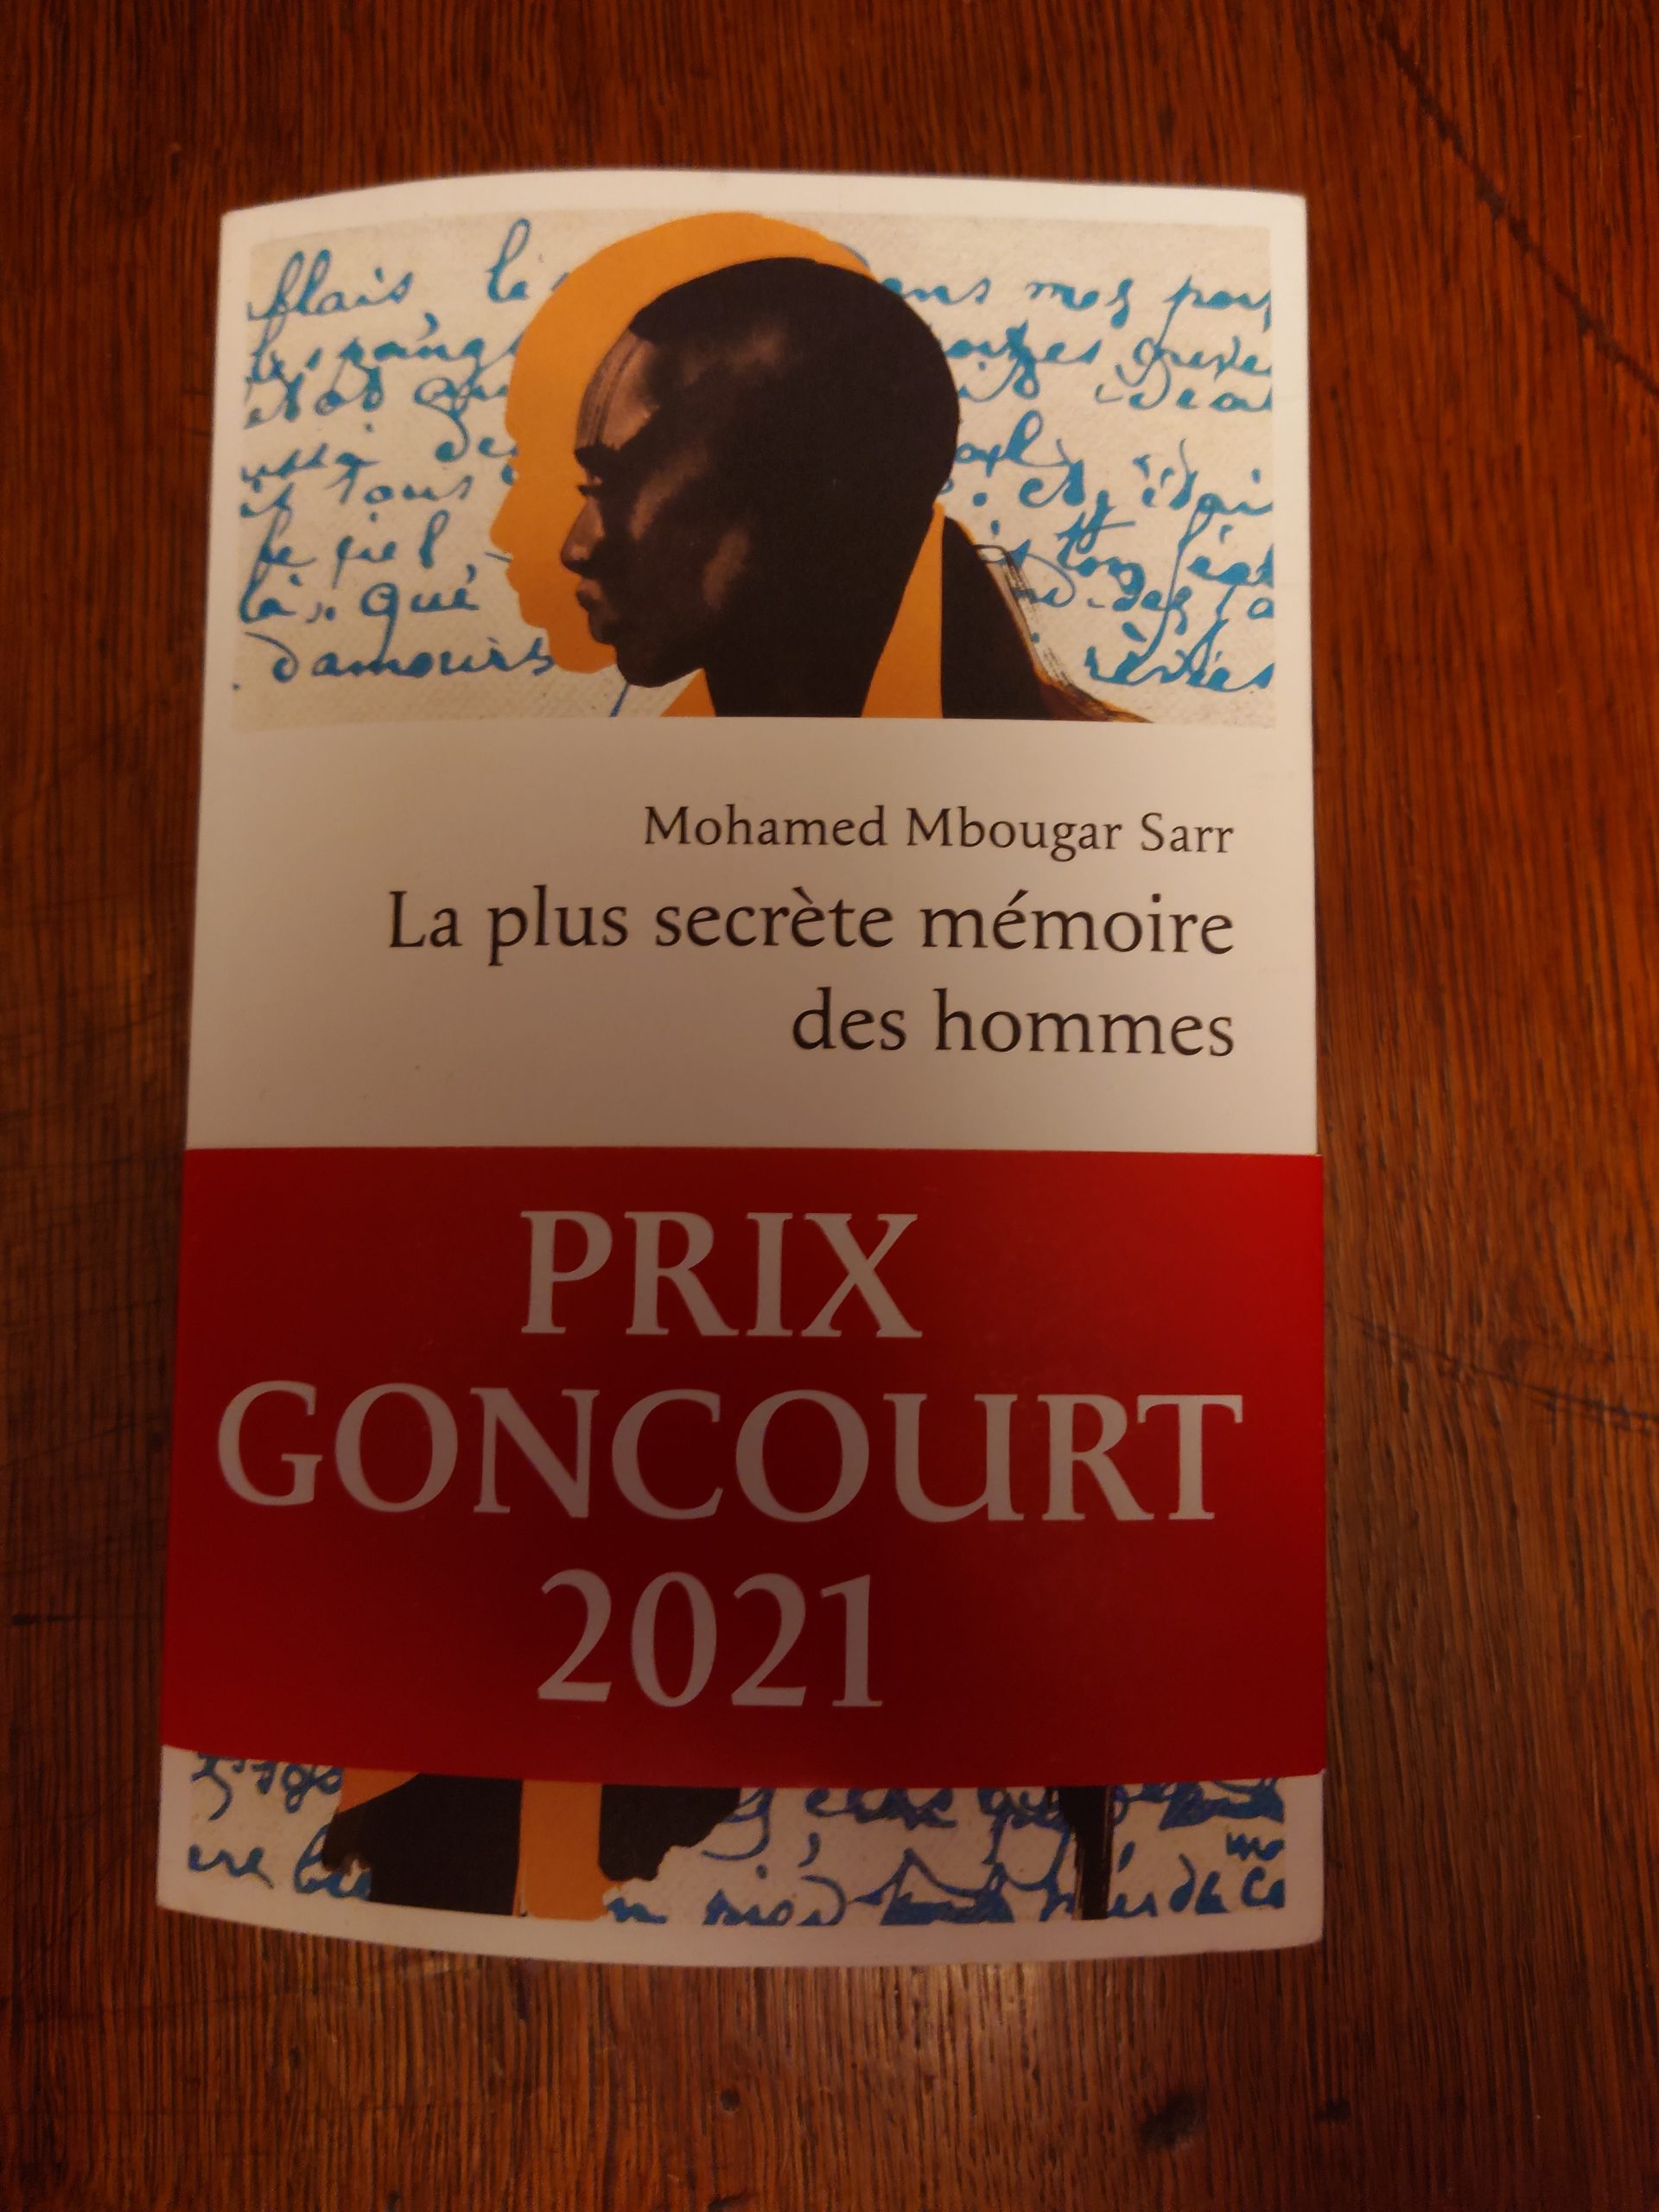 La longue histoire du prix Goncourt